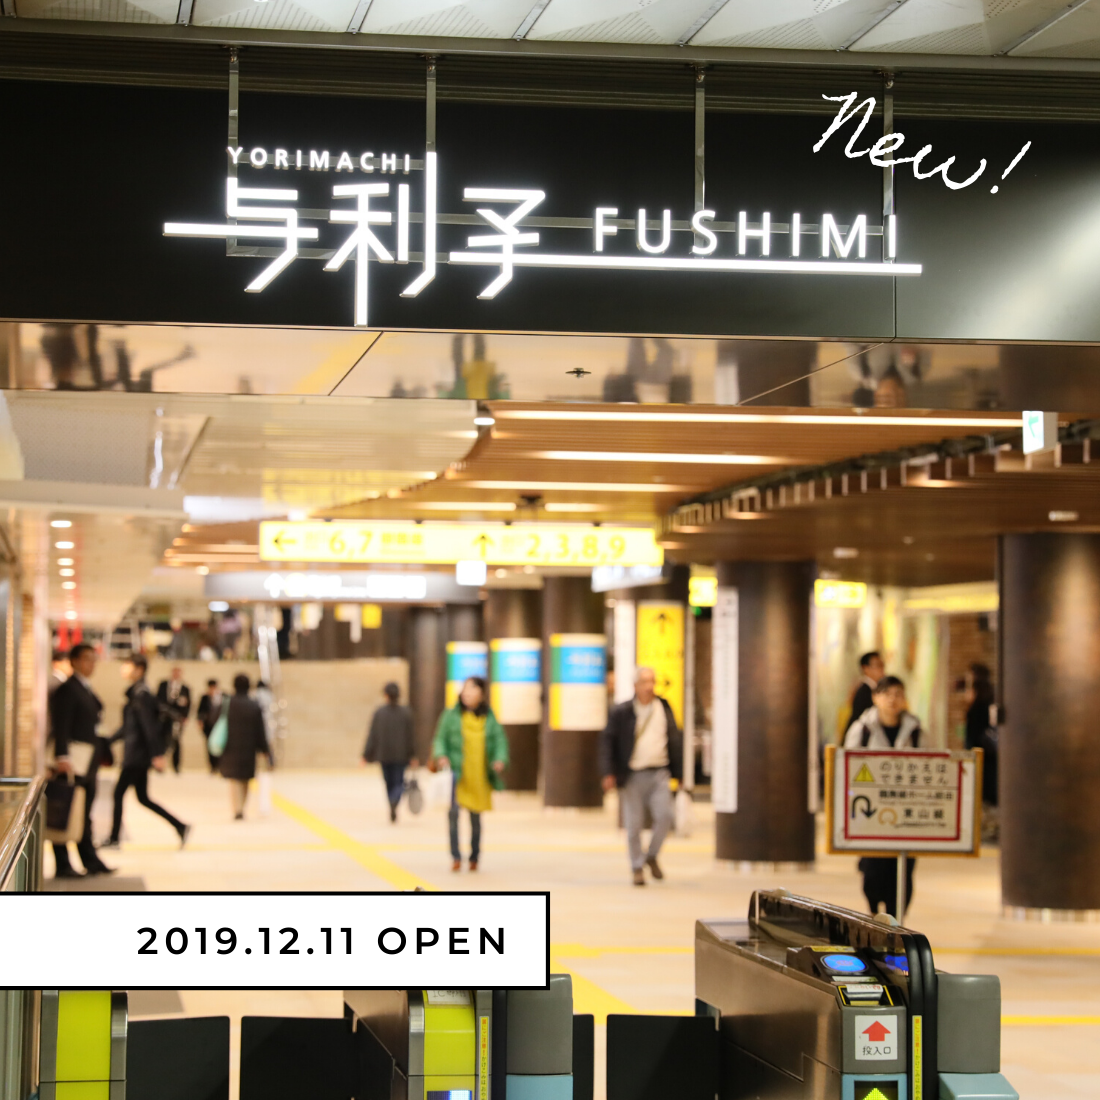 商業施設 ヨリマチfushimi 全11ショップを徹底レポート 名古屋 伏見駅